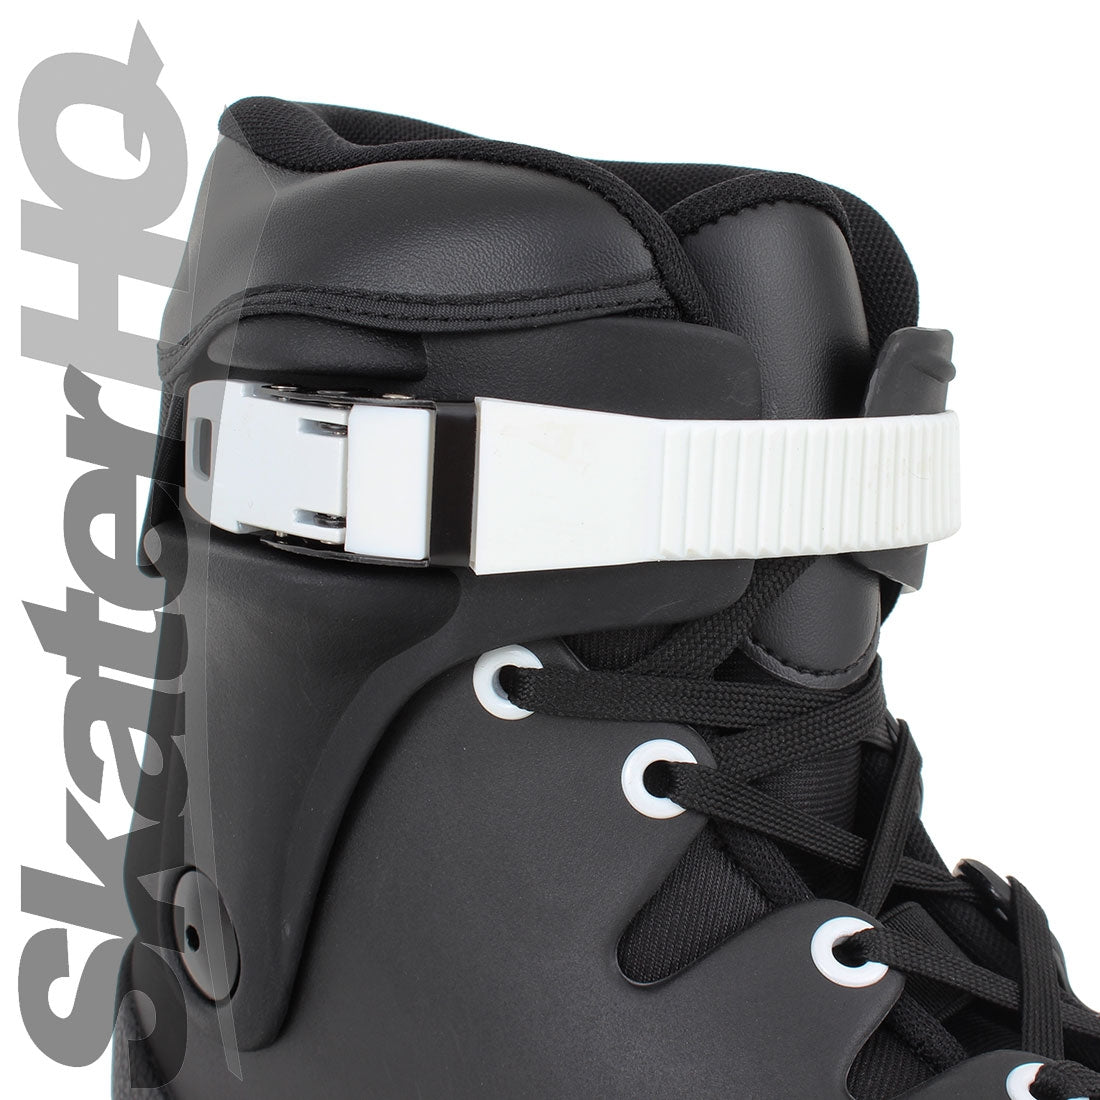 THEM Skates 908 Boot v2 Black/White 7-8US Inline Aggressive Skates